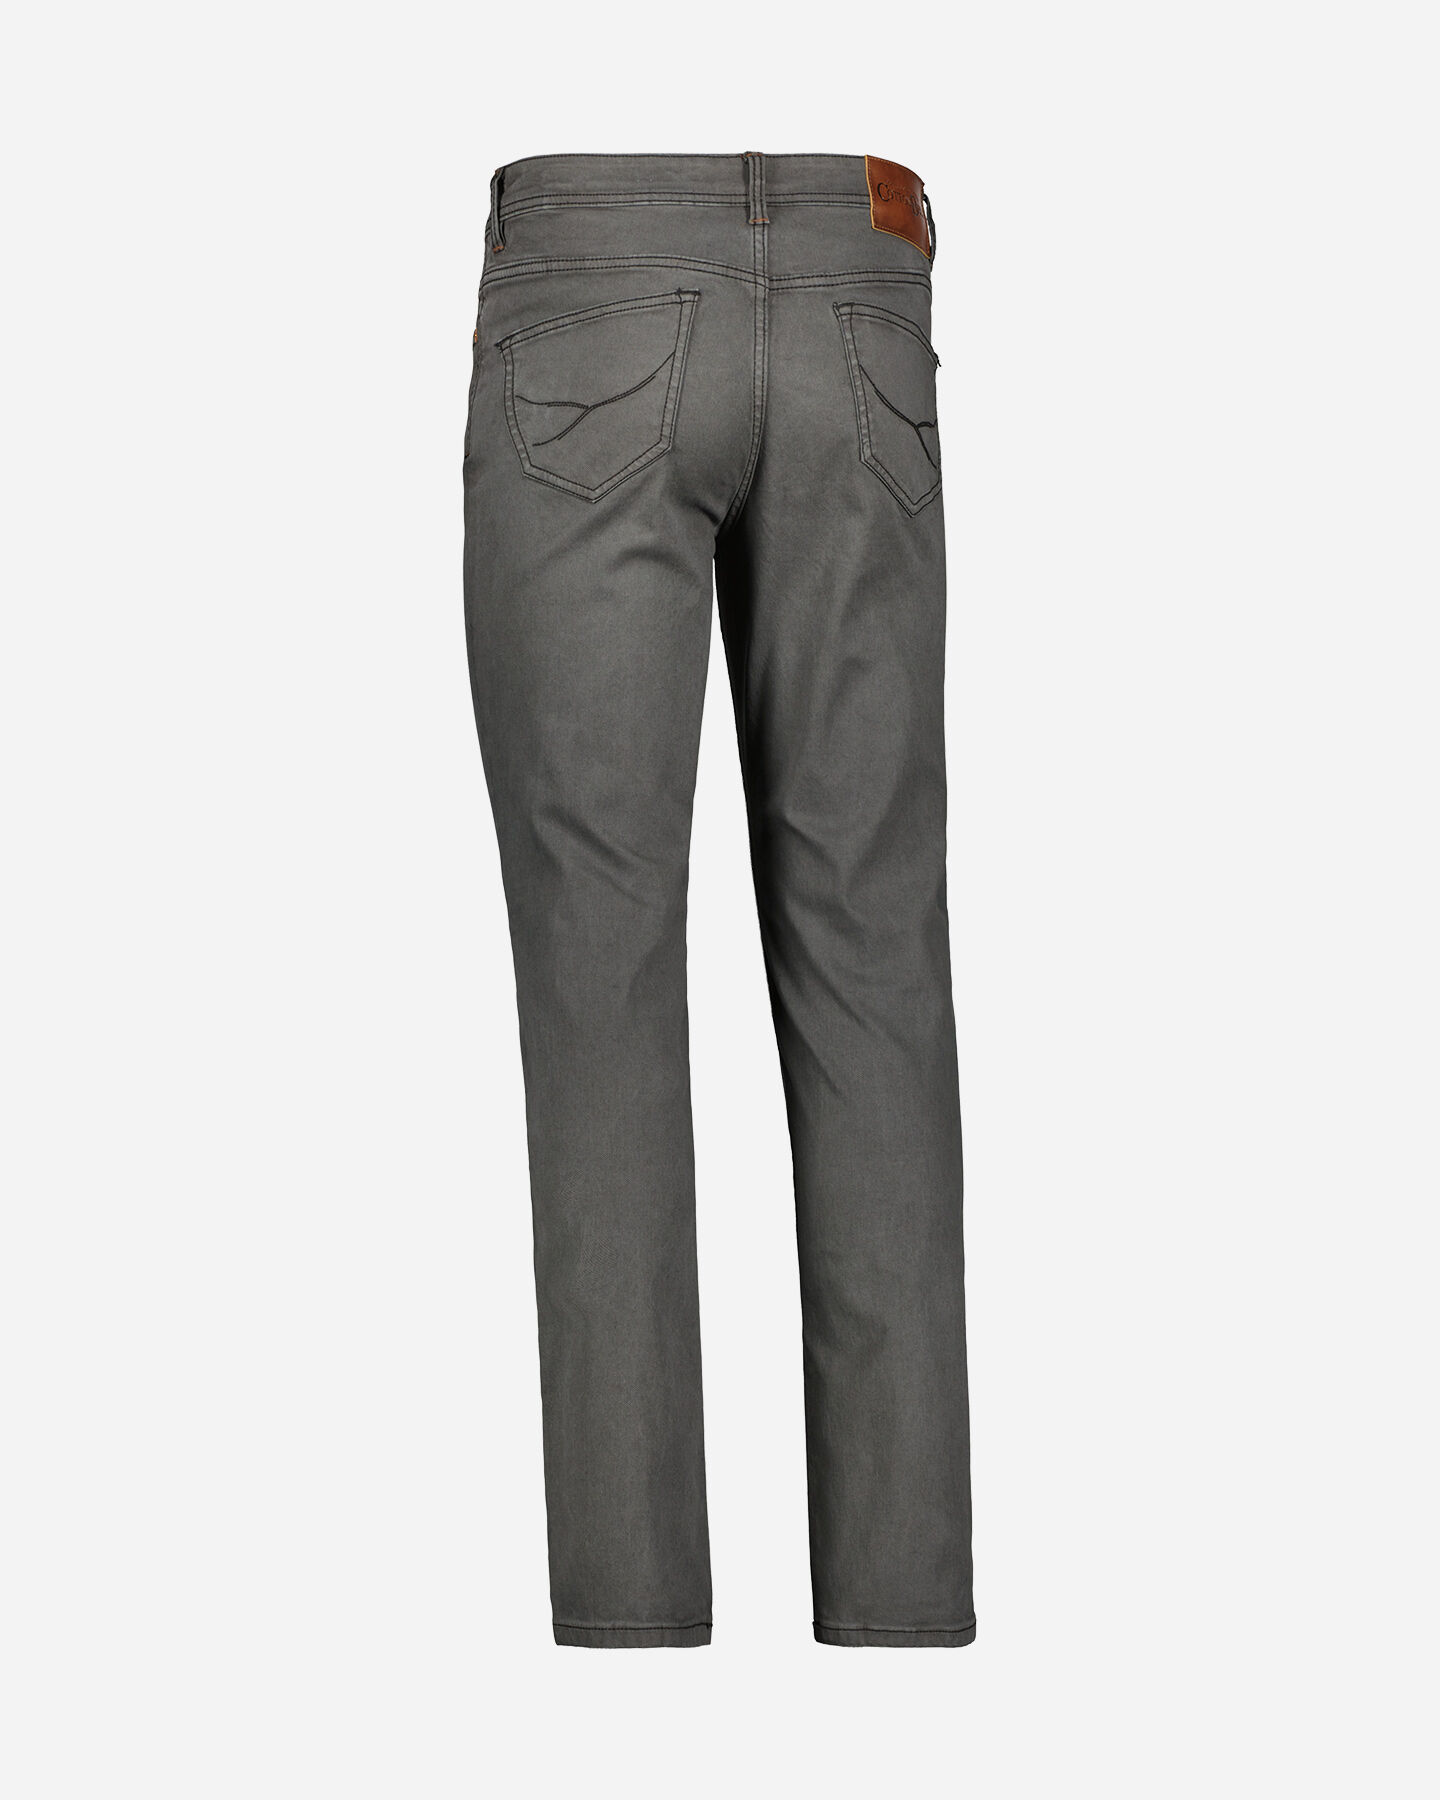  Pantalone COTTON BELT HAMILTON M S4113473|910|40 scatto 2